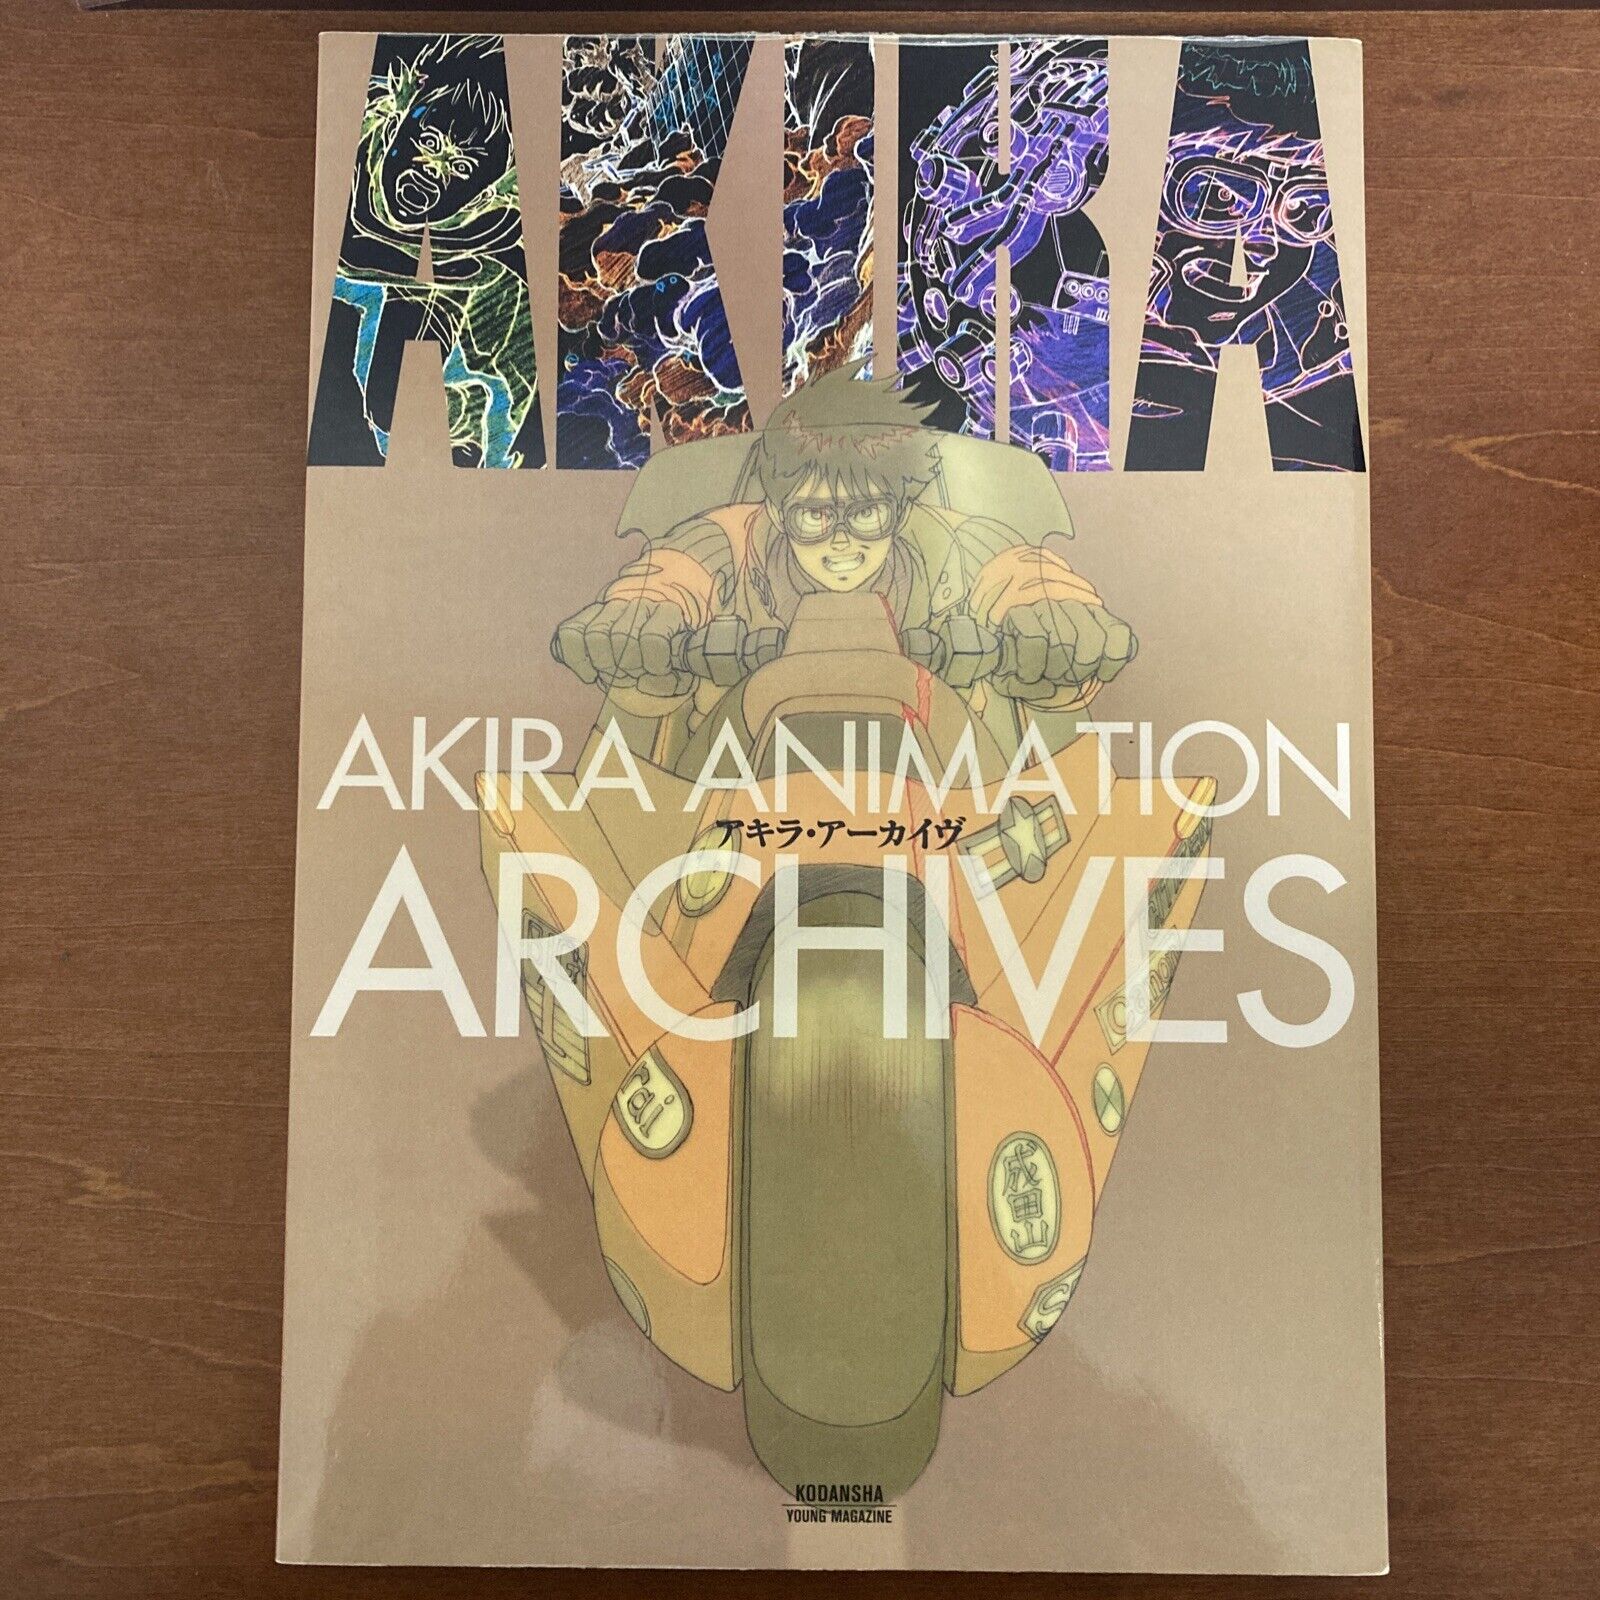 AKIRA ANIMATION ARCHIVES  Katsuhiro Otomo Art Book Illustration